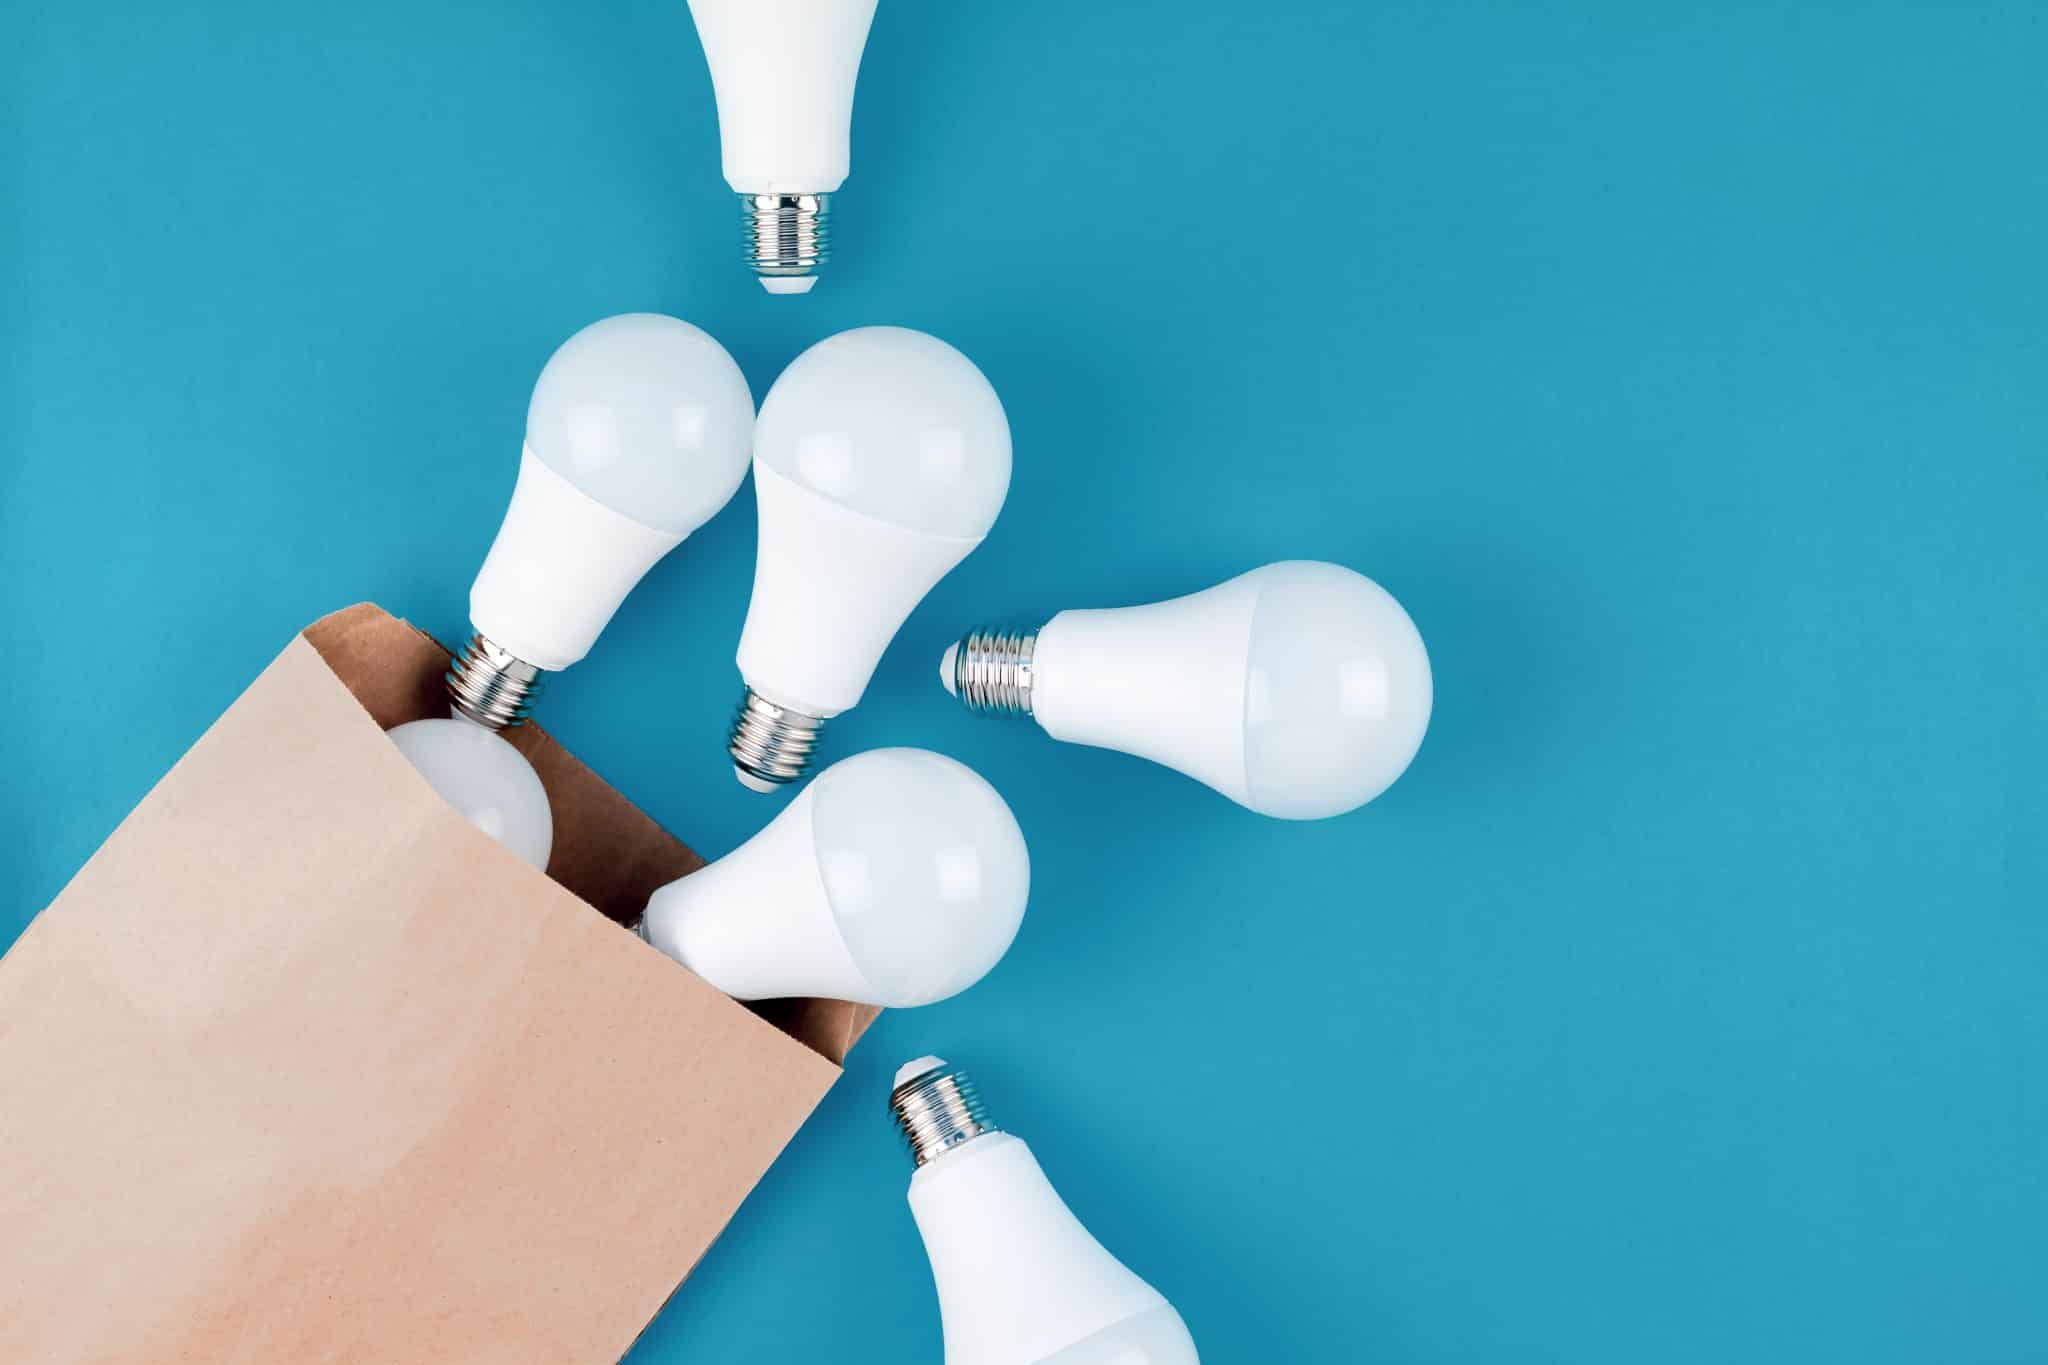 Eclairage LED : les spécialistes pour des éclairages selon vos besoins